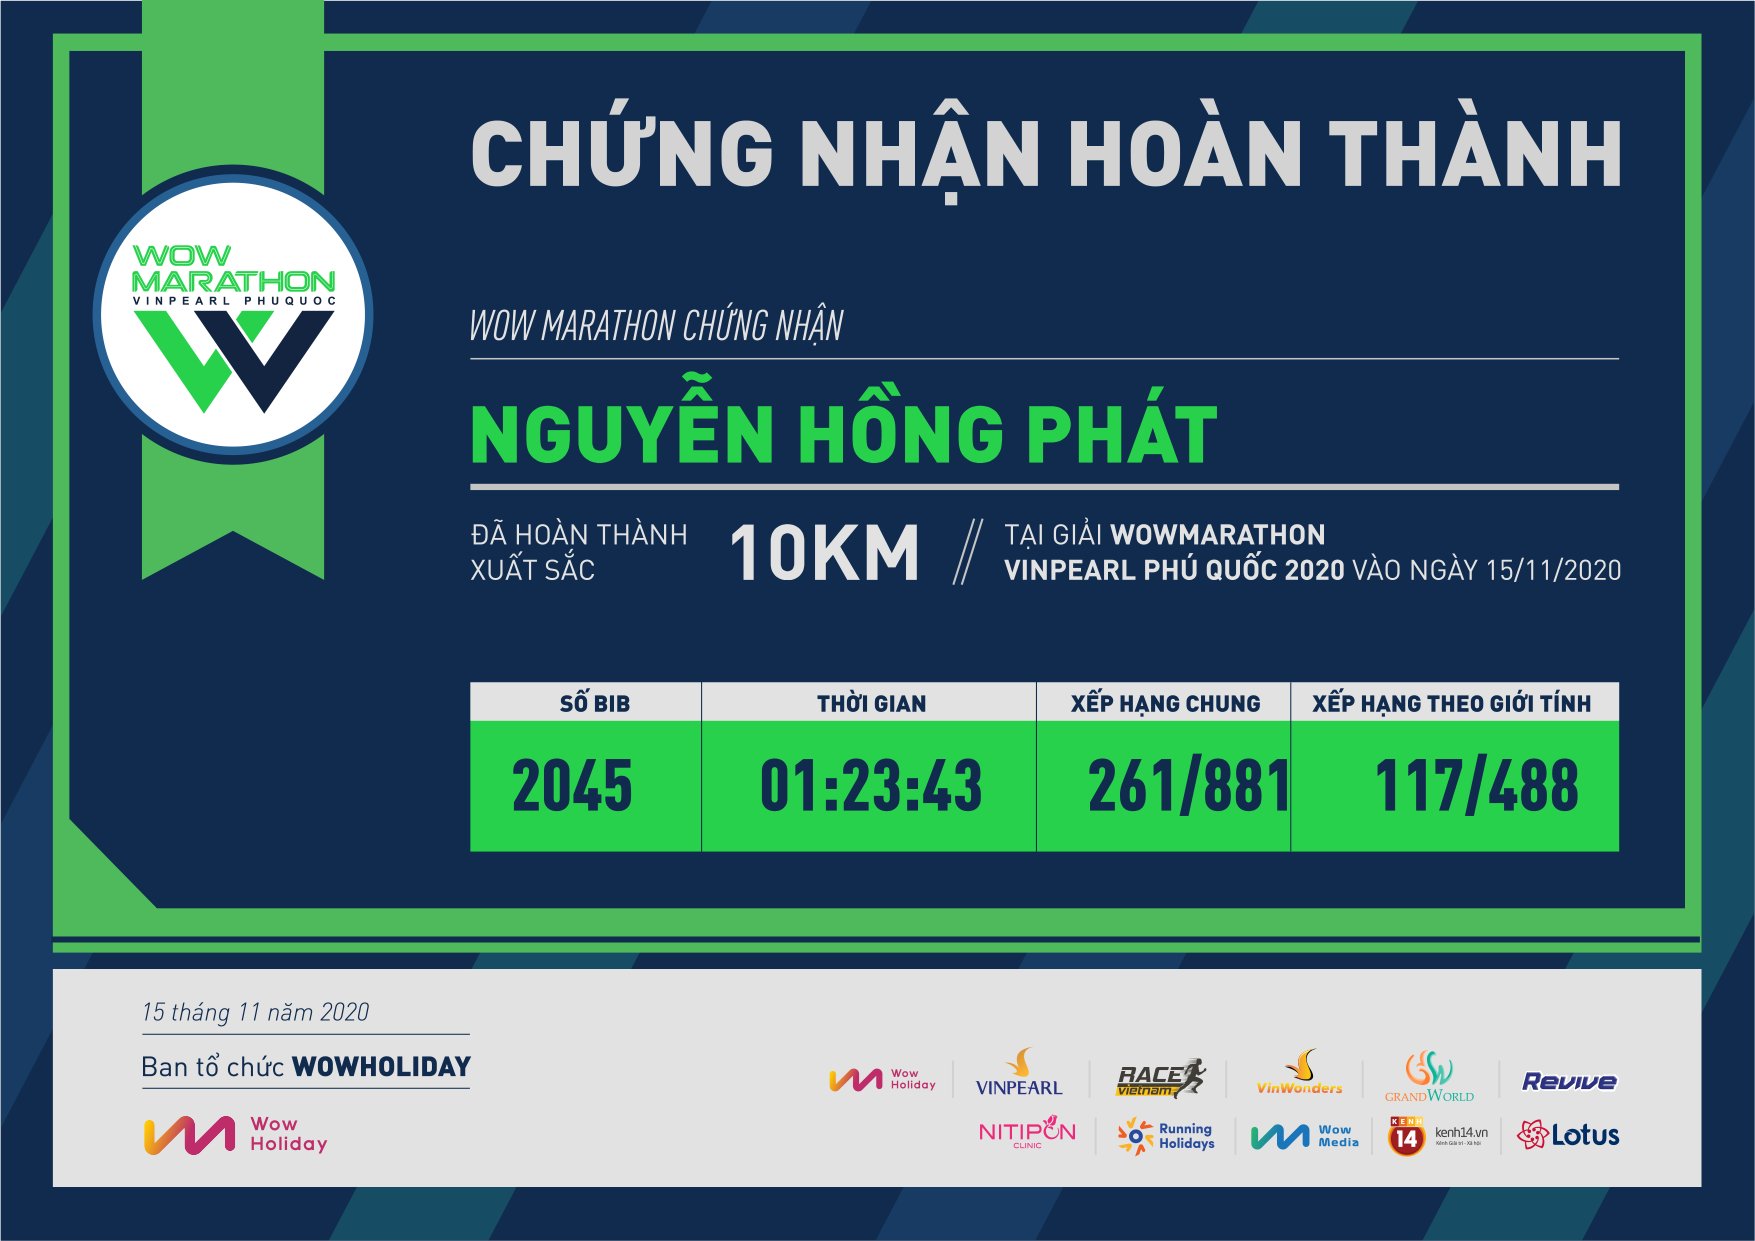 2045 - Nguyễn Hồng Phát